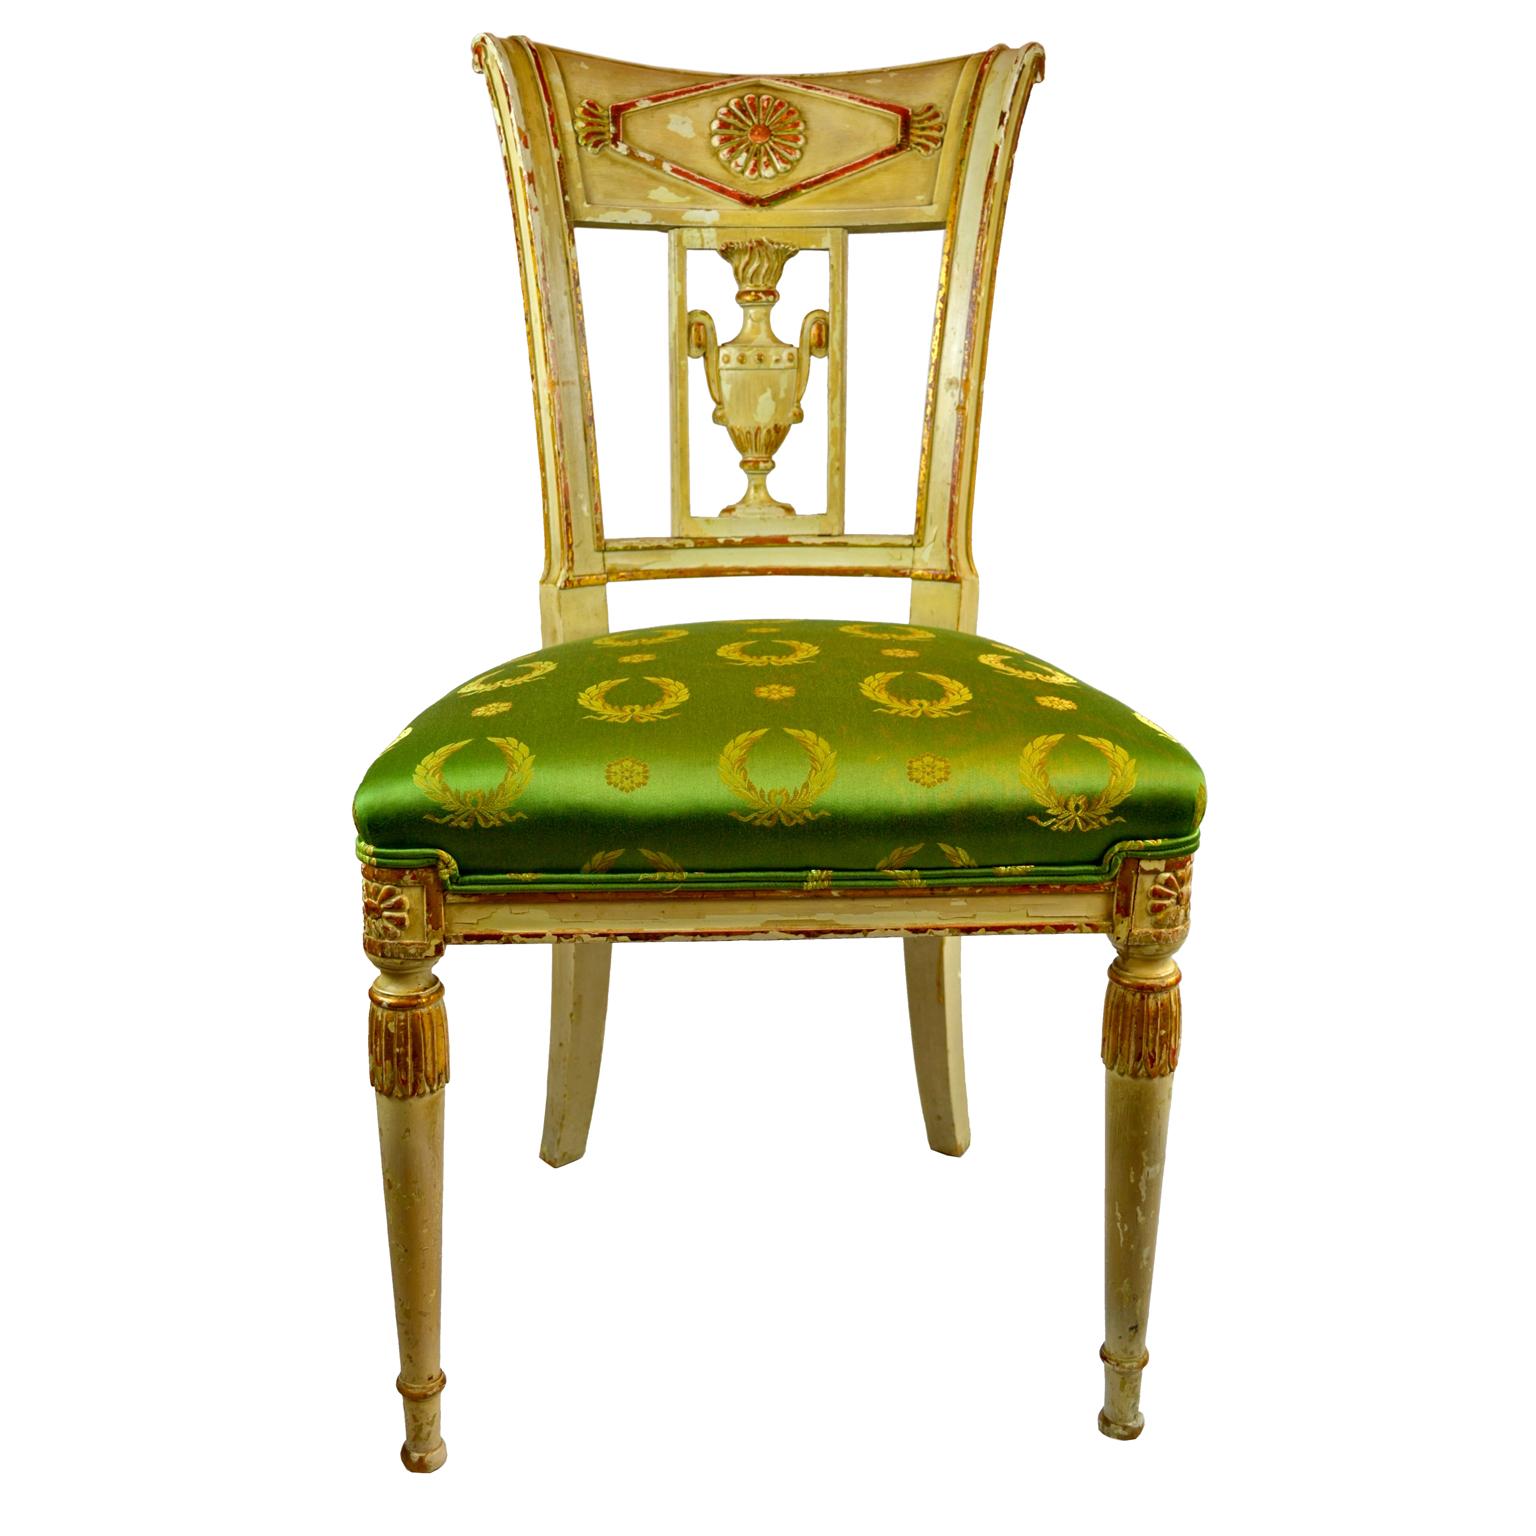 Ein französischer Beistellstuhl aus dem späten 18. Jahrhundert aus der Directoire-Periode mit einem geschnitzten und paketvergoldeten, cremefarbenen Rahmen. Die Rückwand mit einer geschnitzten klassischen Urne. Gepolstert mit grünem